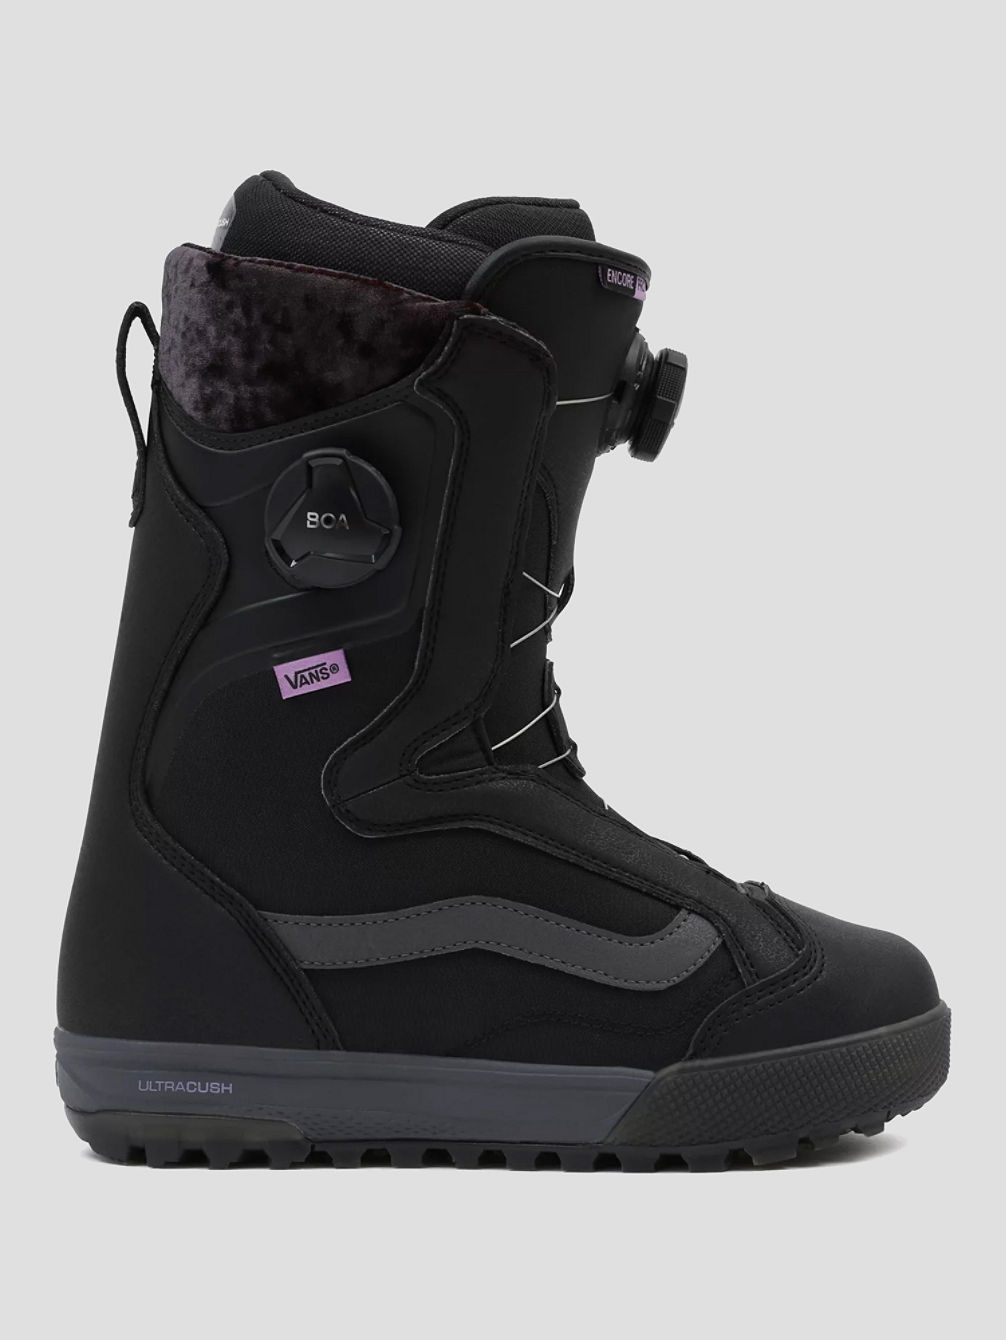 Encore Pro 2024 Snowboard schoenen